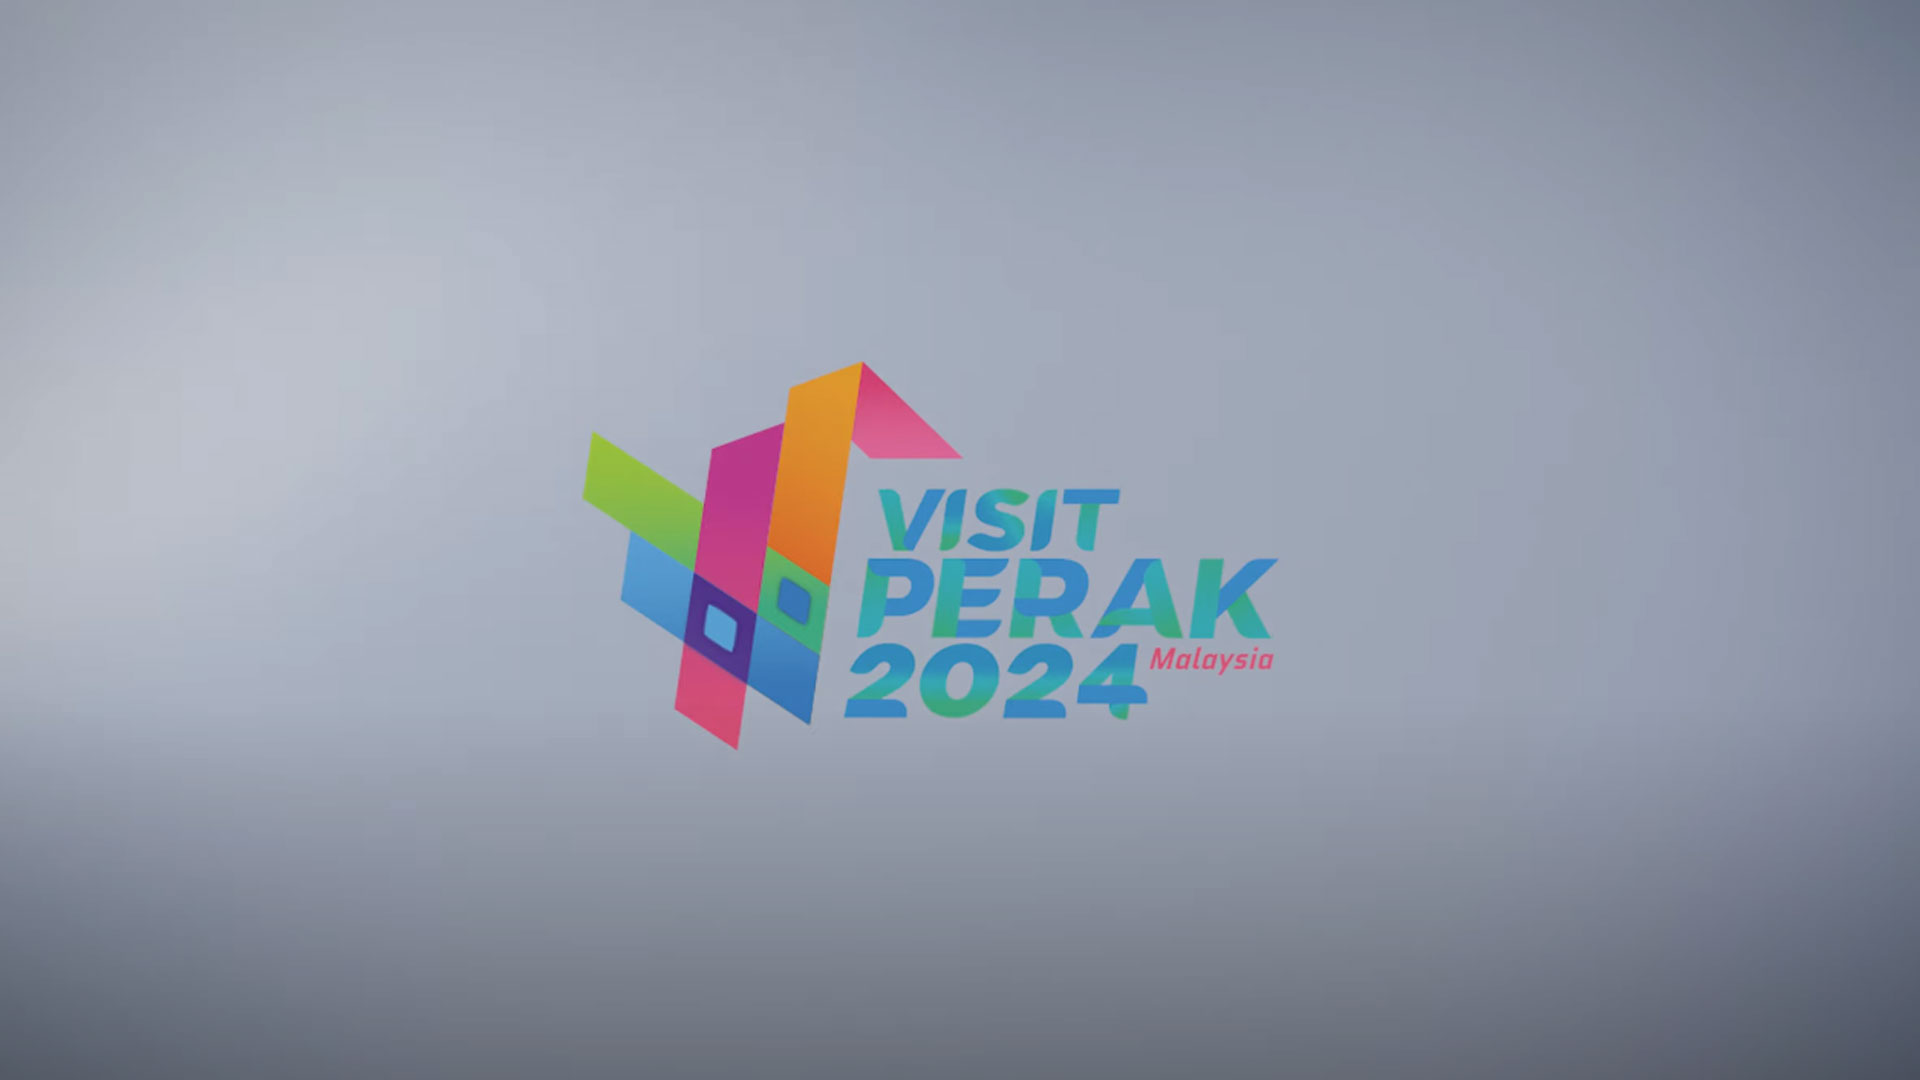 Visit Perak Year 2024